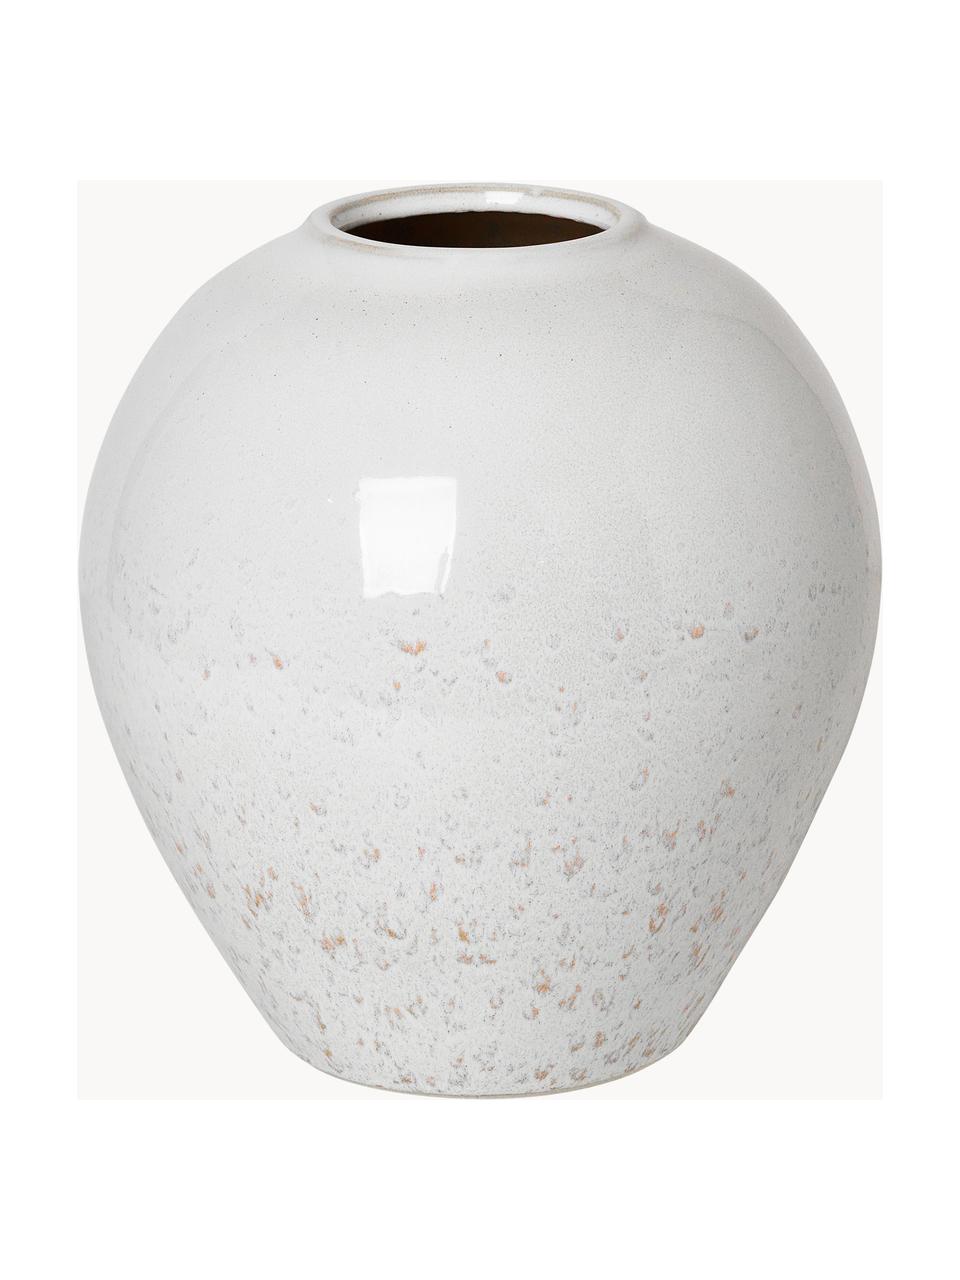 Handgefertigte Vase Ingrid aus Keramik, Keramik, glasiert, Weiß, gesprenkelt, Ø 24 x H 26 cm